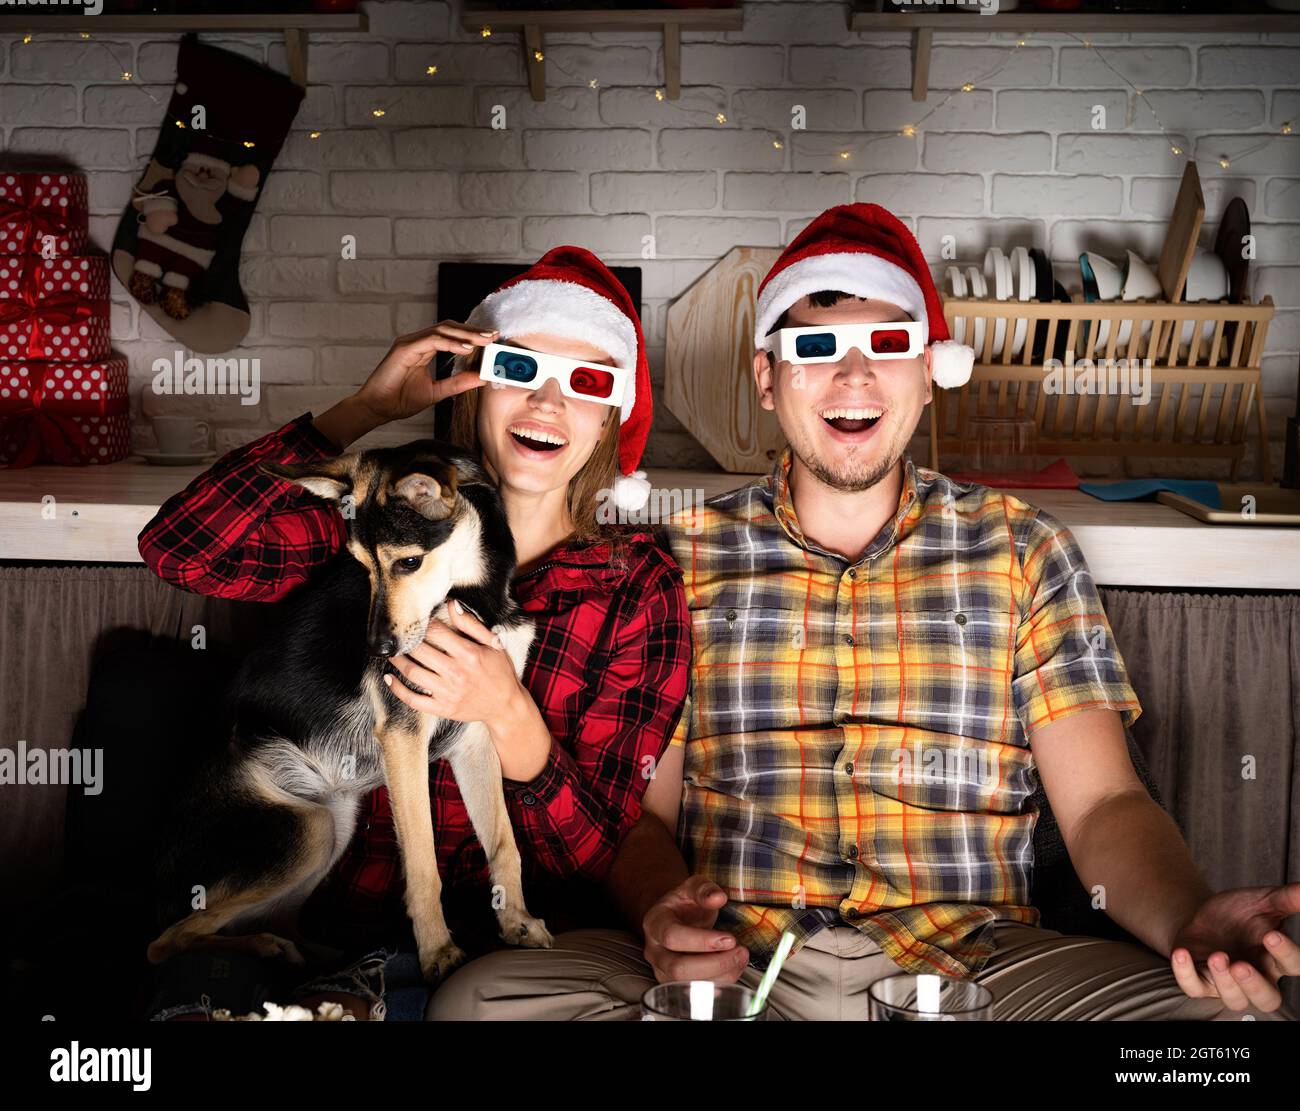 Soirée cinéma.Jeune couple en lunettes 3d regardant des films à la maison à  Noël pointant vers l'écran Photo Stock - Alamy